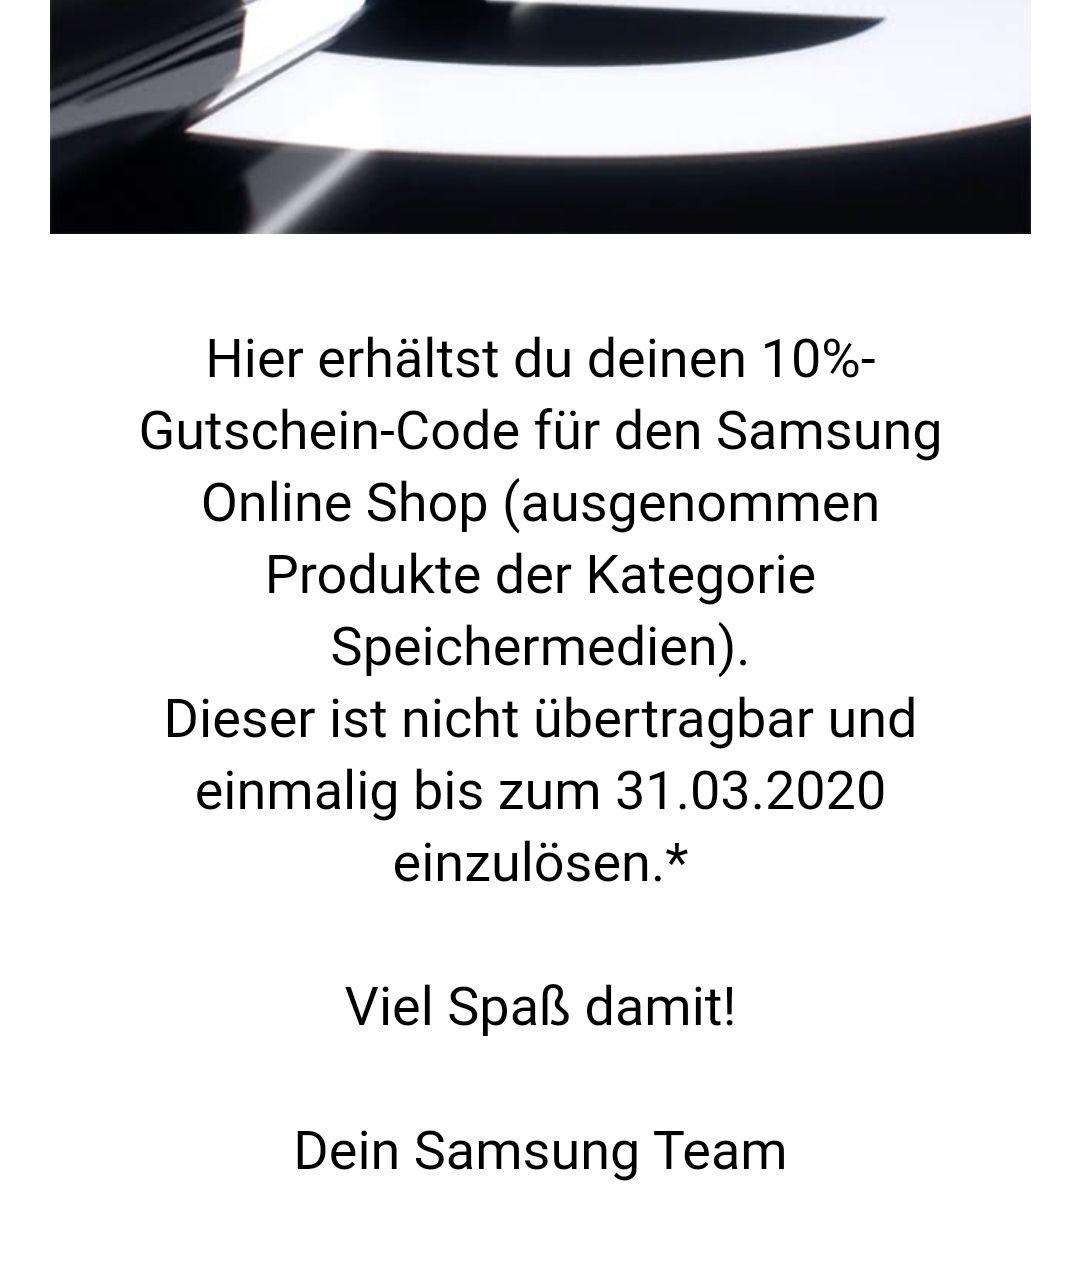 Gutscheincode inaktiv?? - Samsung Community